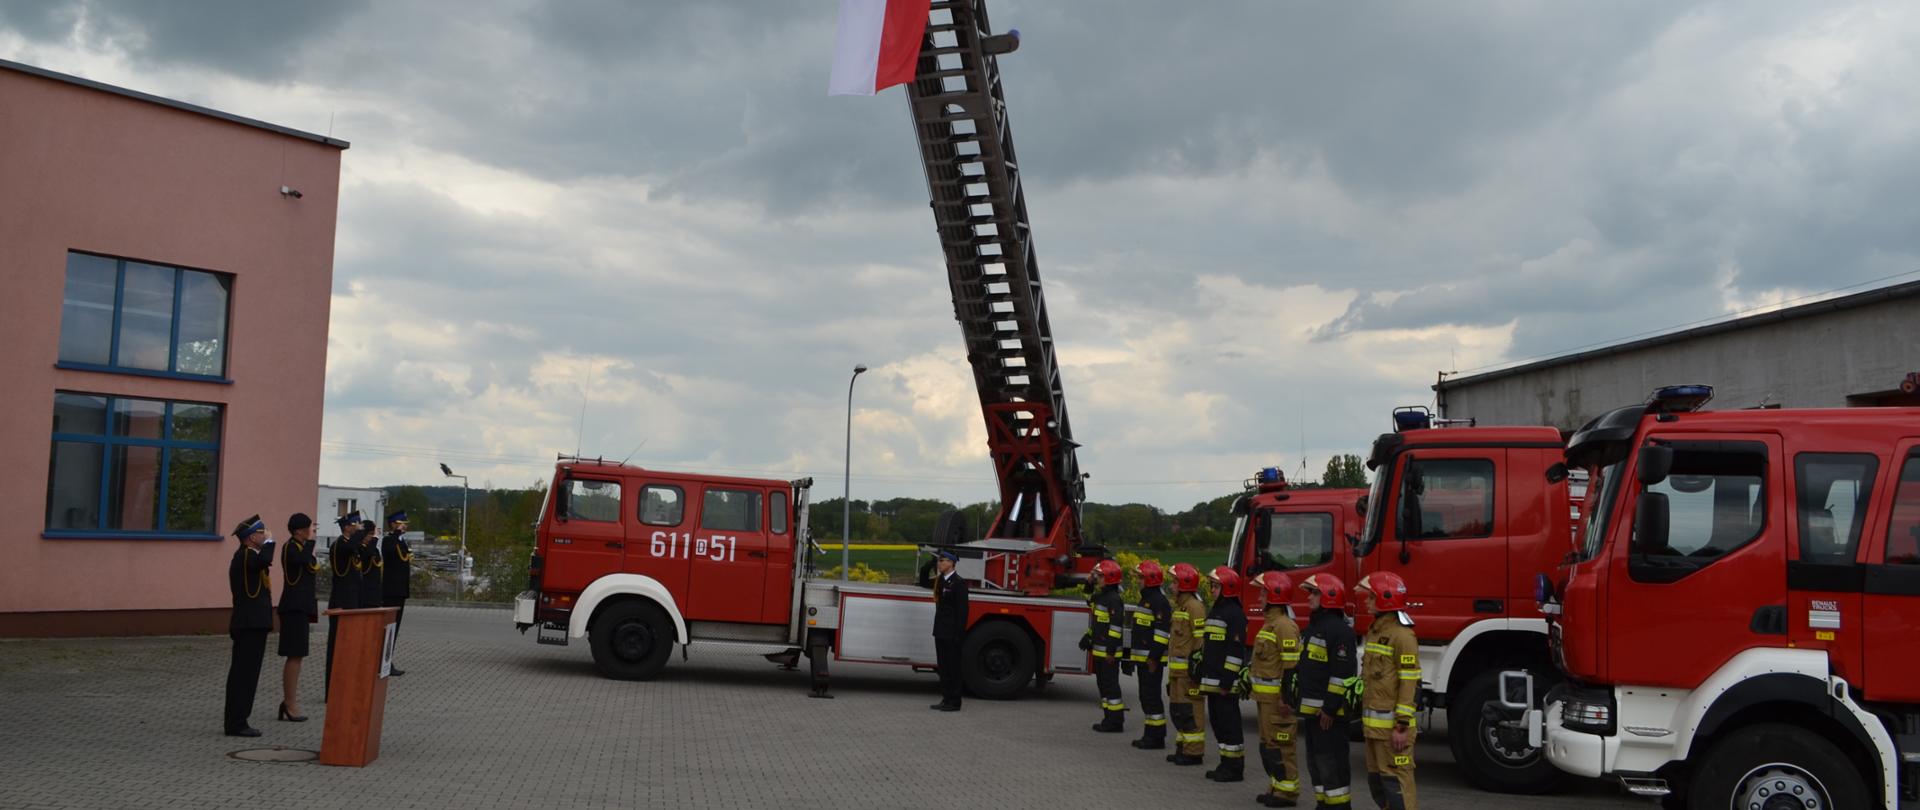 cztery samochody strażackie, przed nimi szereg strażaków salutujących do wciągniętej flagi państwowej